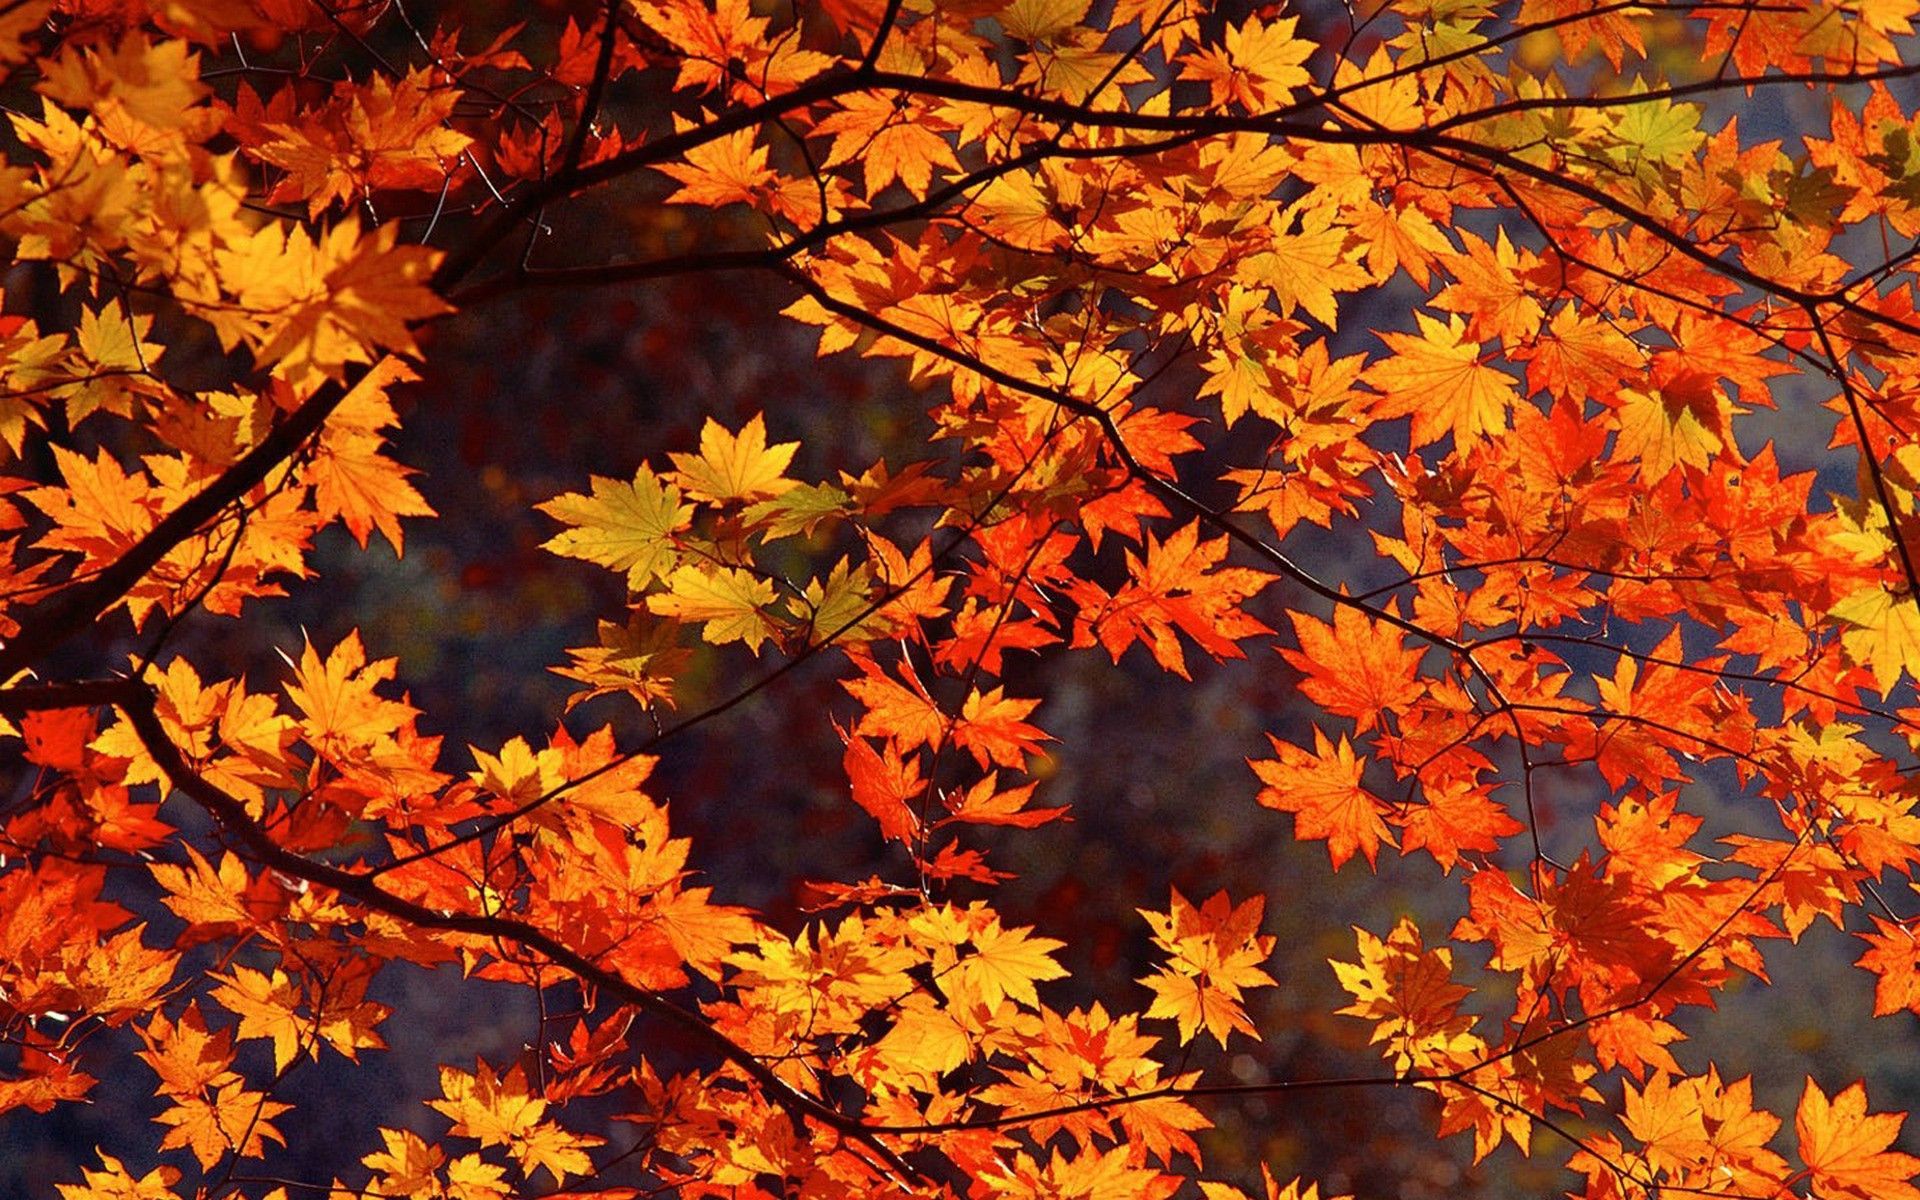 japan autumn. Japan Autumn wallpaper. Koi. Autumn leaves wallpaper, Fall wallpaper, Free fall wallpaper